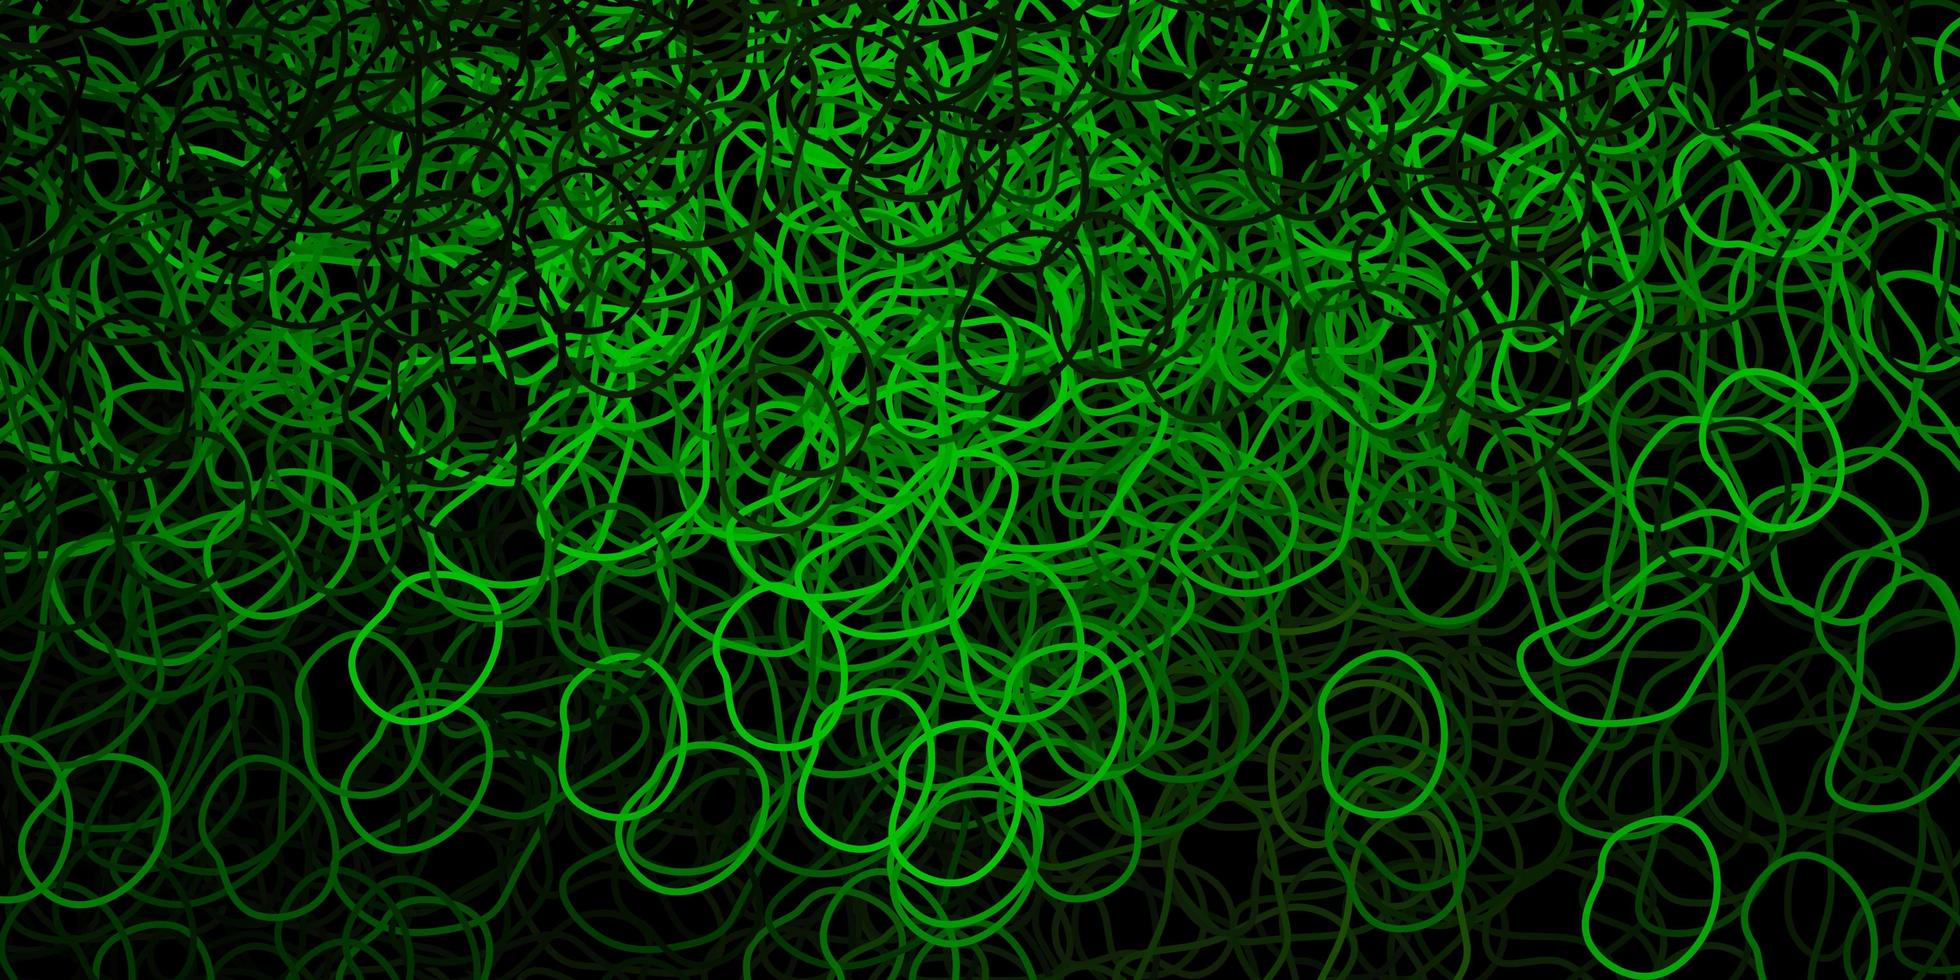 mörkgrön vektorbakgrund med kaotiska former. vektor